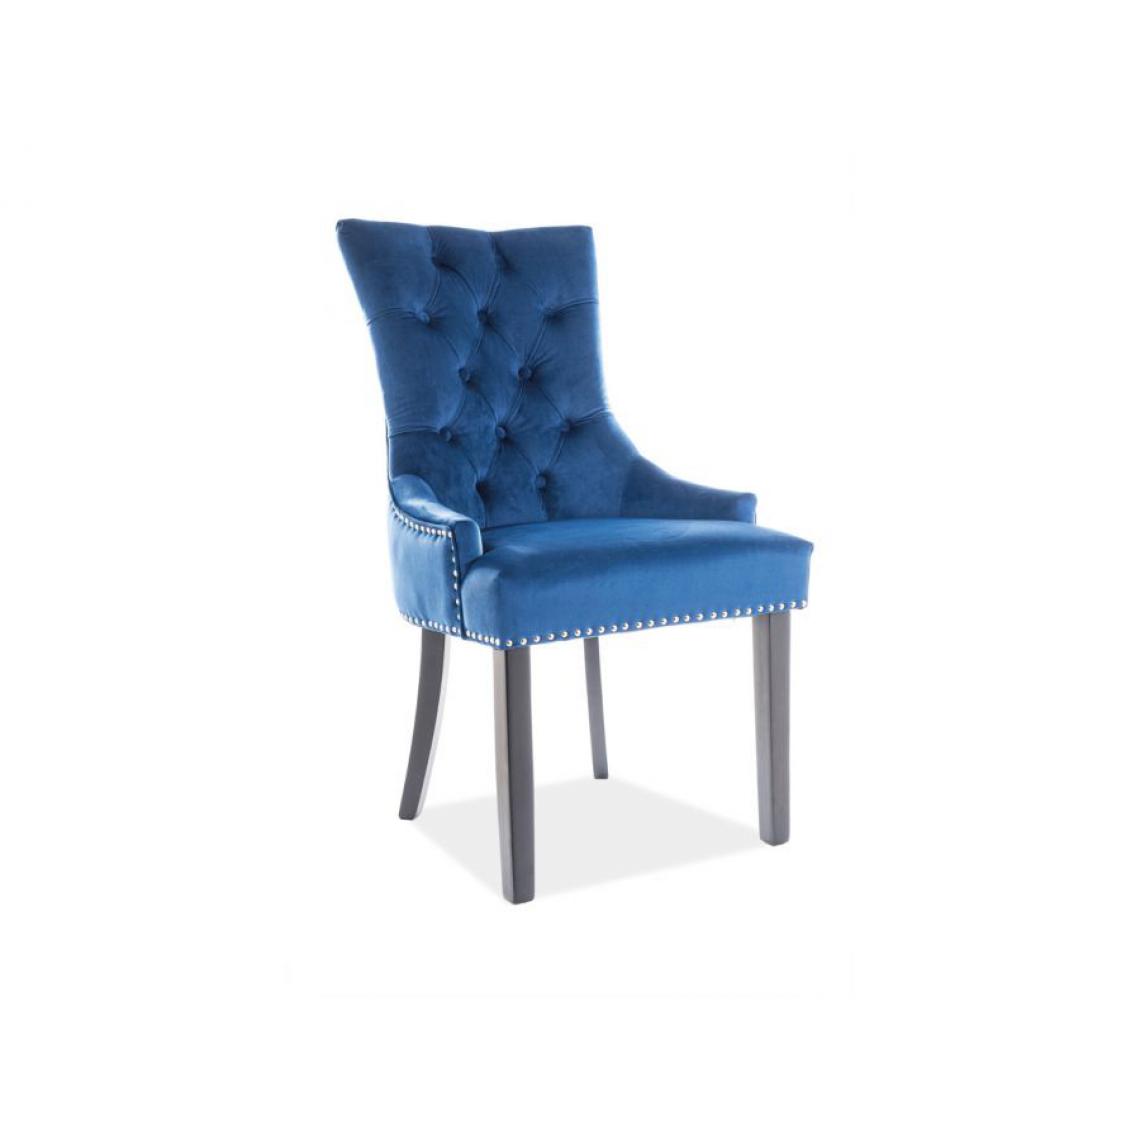 Hucoco - AGNETTI | Chaise élégante rembourrée | 99x55x45 cm | Rembourrée de velours | Pieds en bois | Dossier ergonomique - Bleu - Chaises